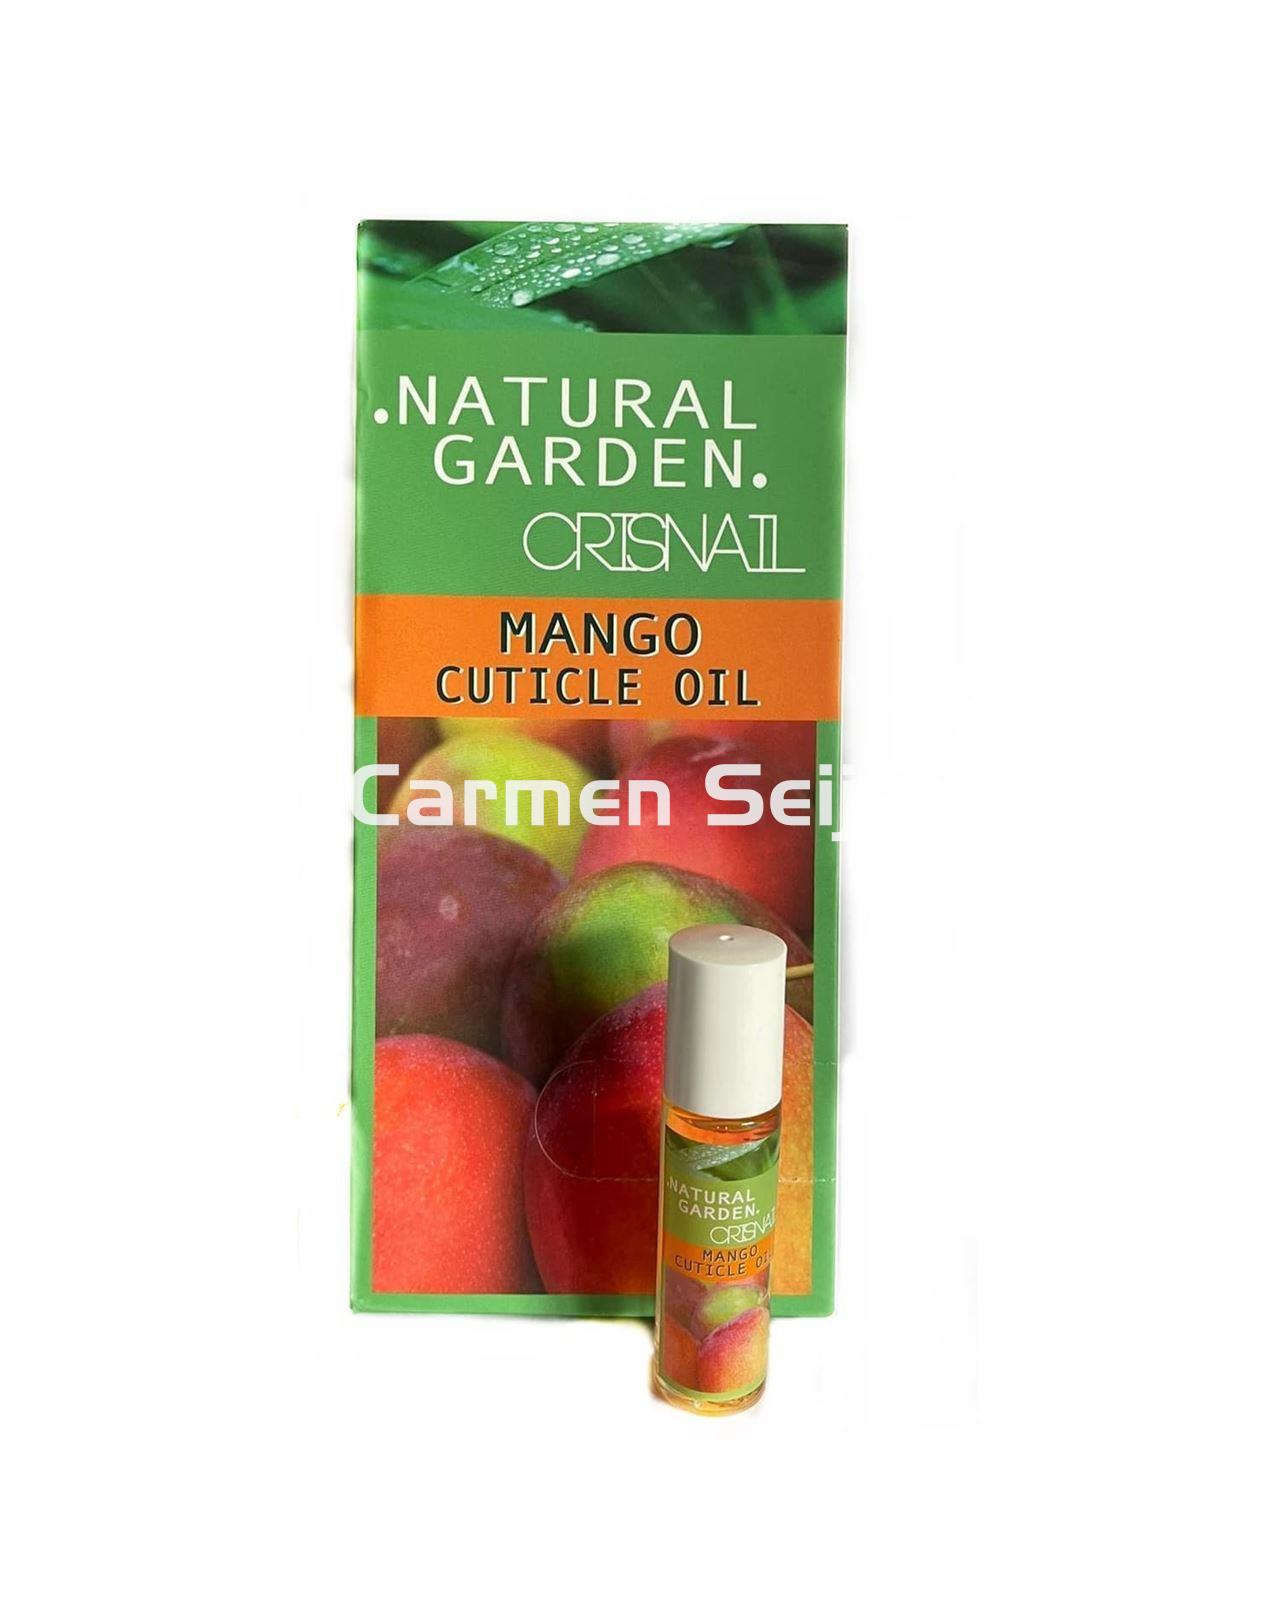 Crisnail Aceite de Mango Cutículas Mango Cuticle Oil Natural Garden 9 unidades - Imagen 1